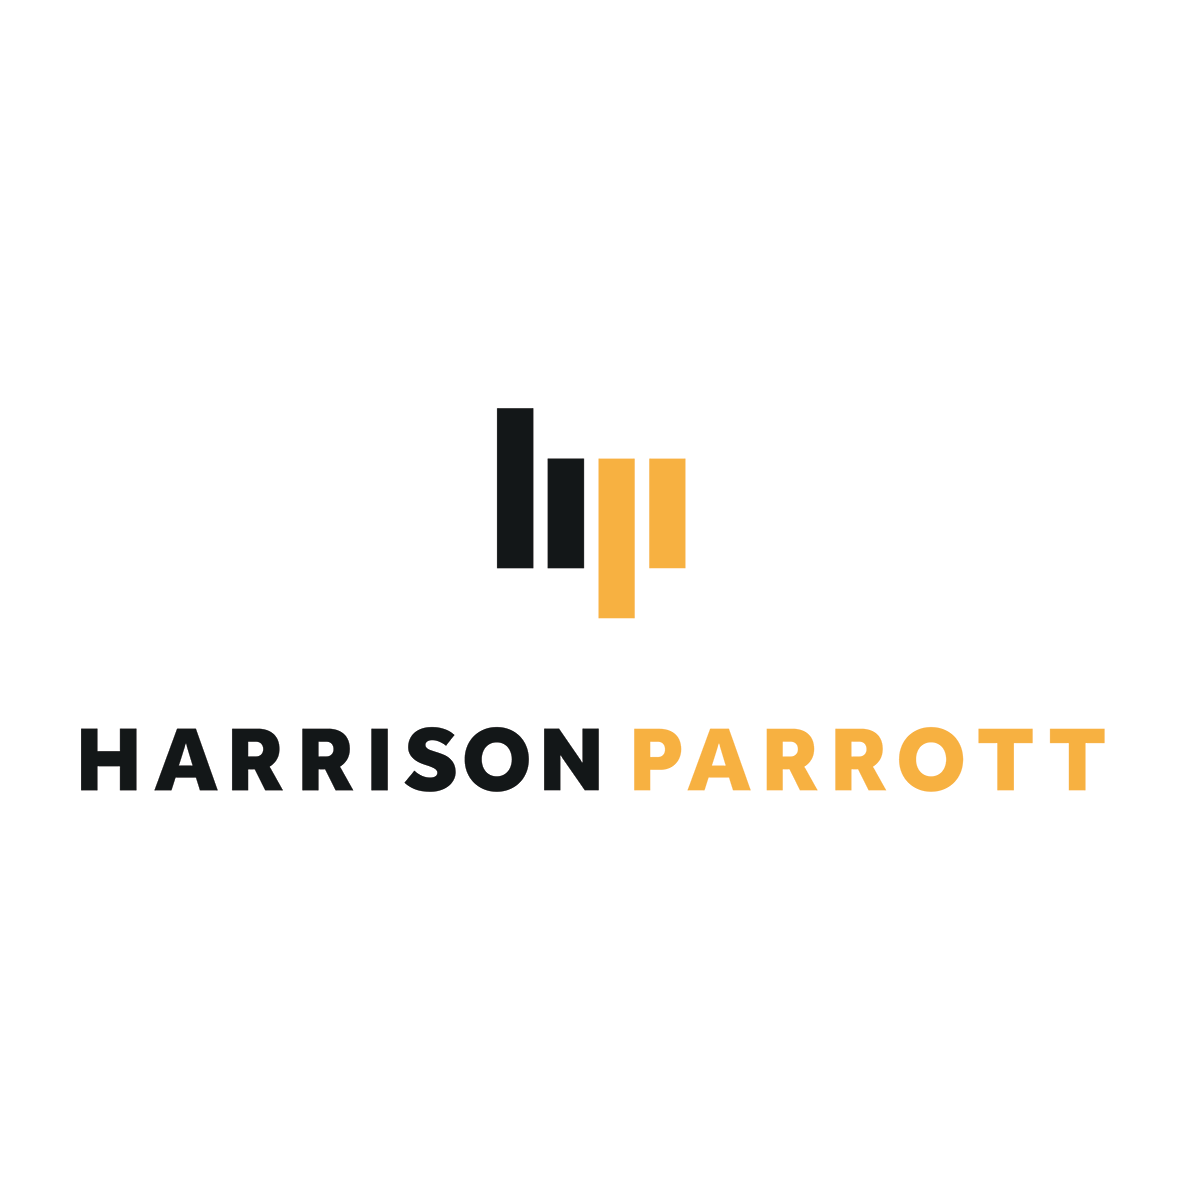 HarrisonParrott